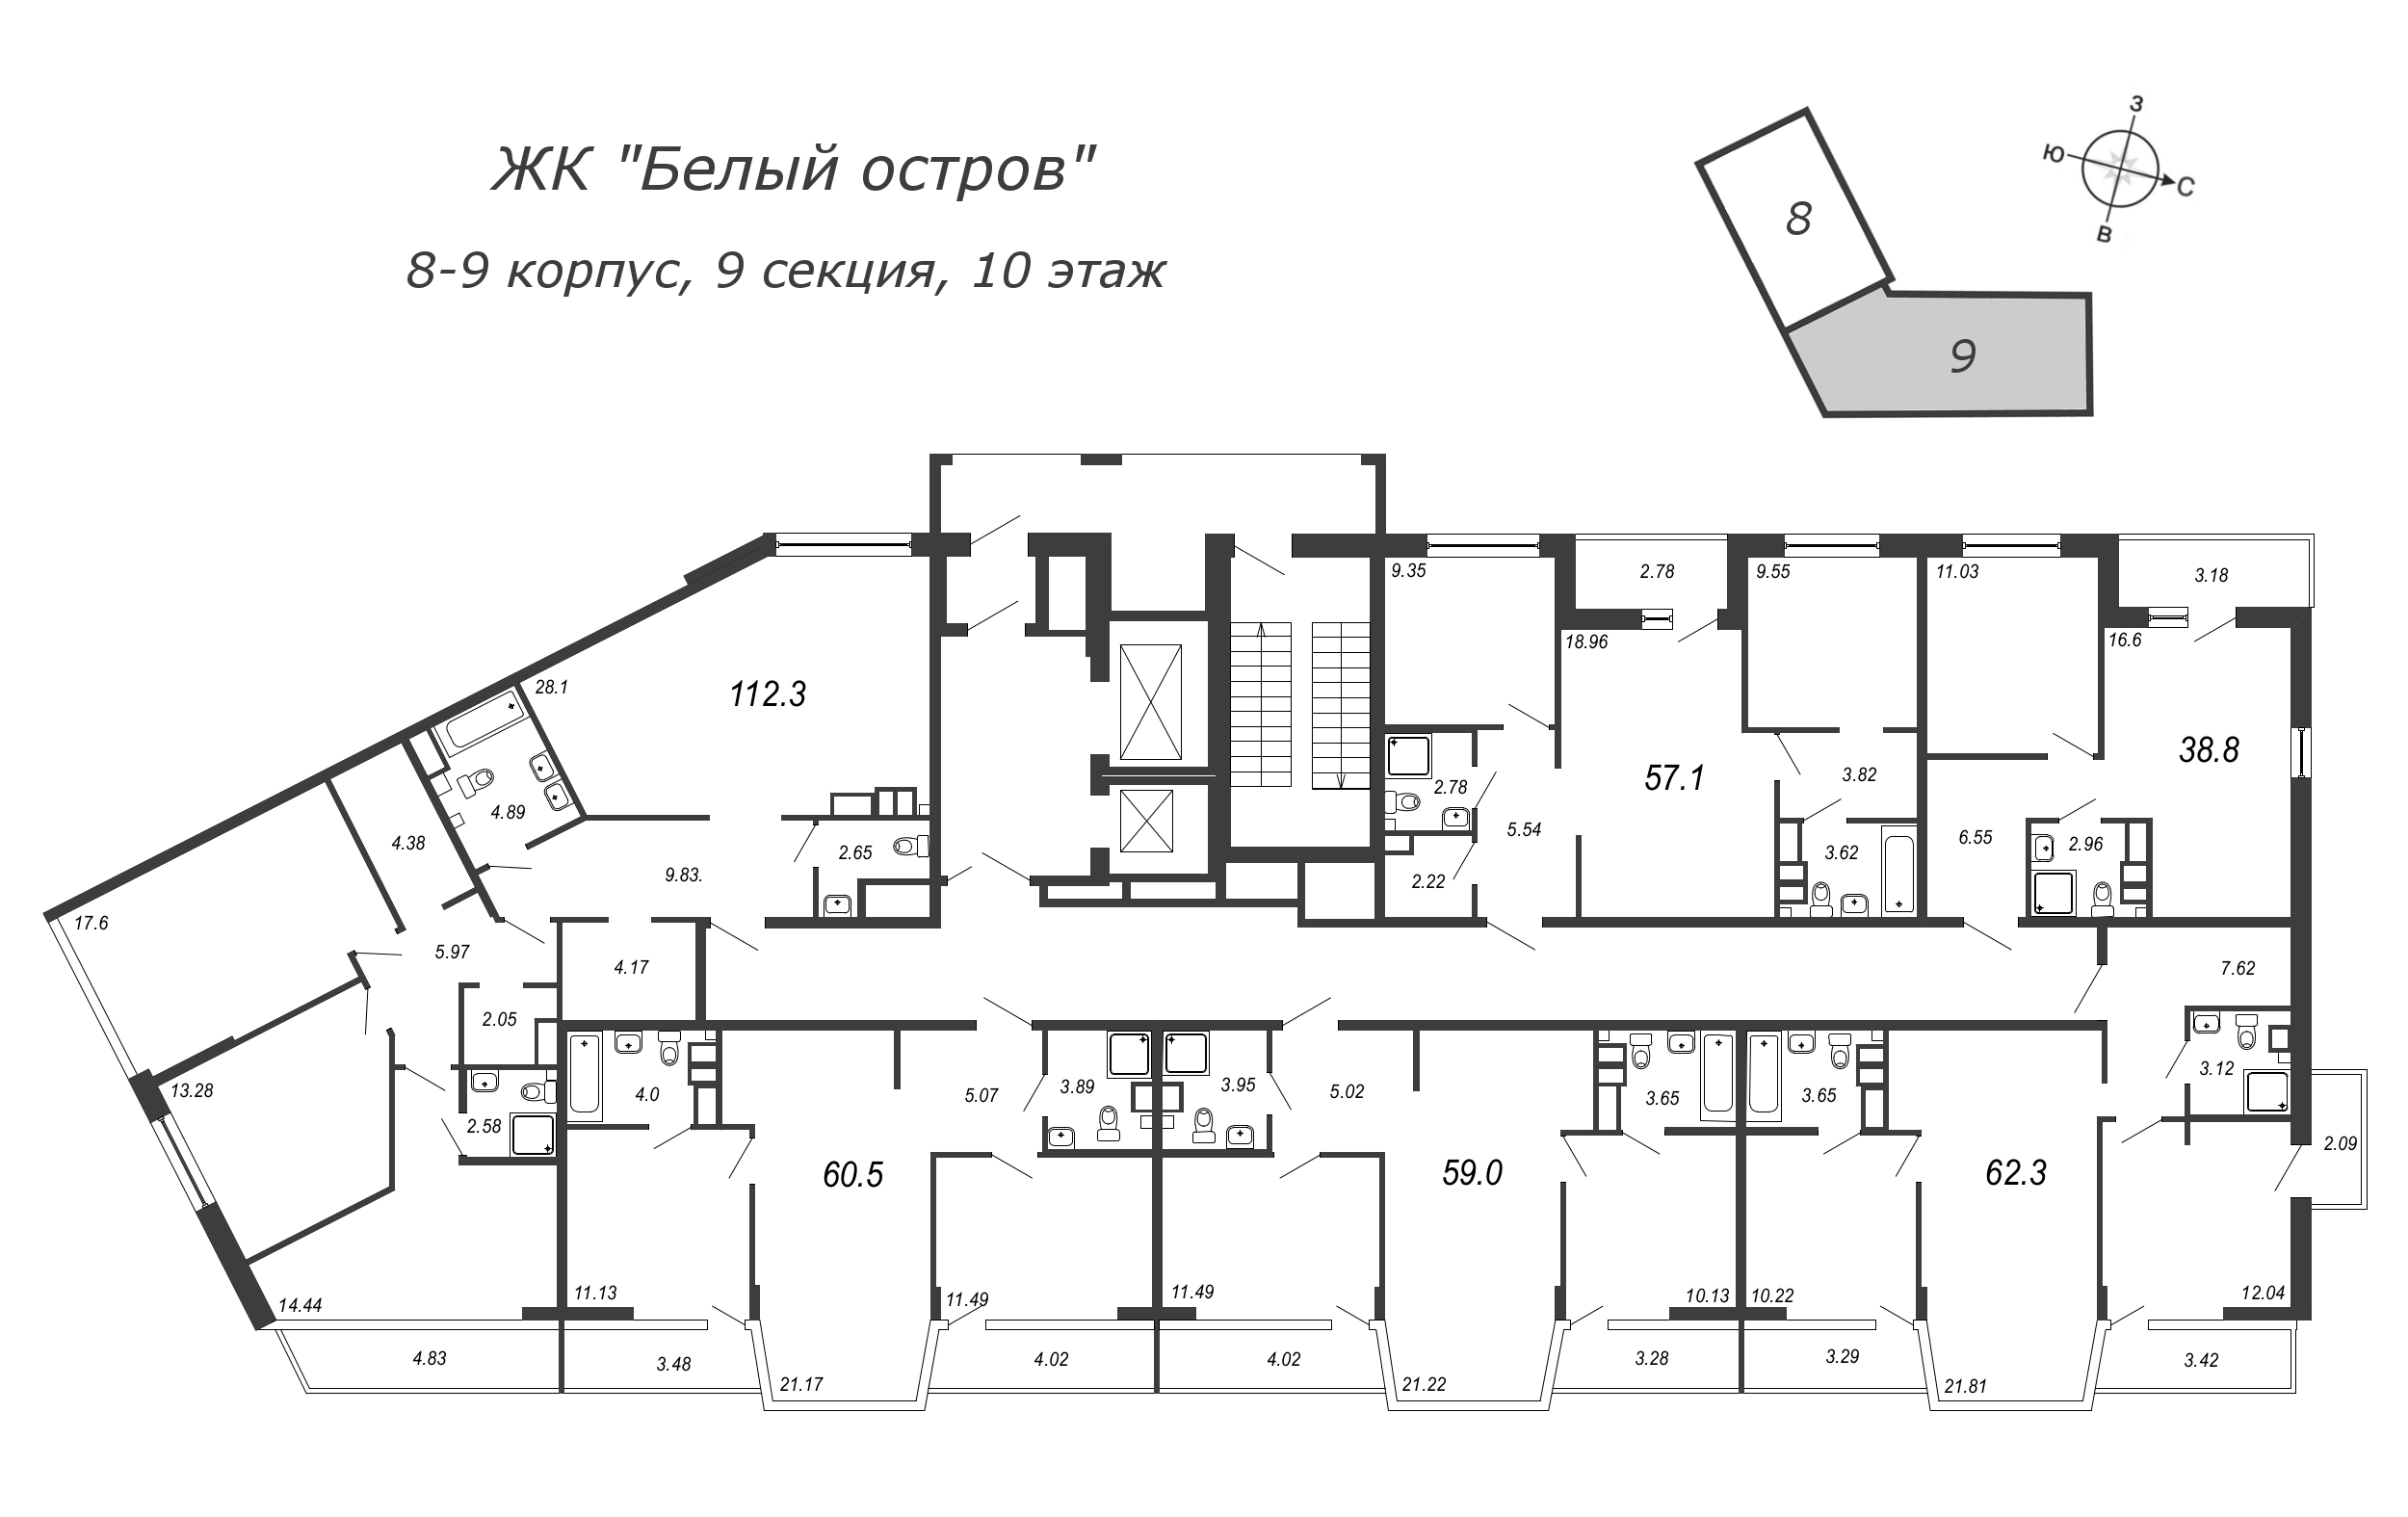 4-комнатная (Евро) квартира, 112.5 м² в ЖК "Белый остров" - планировка этажа